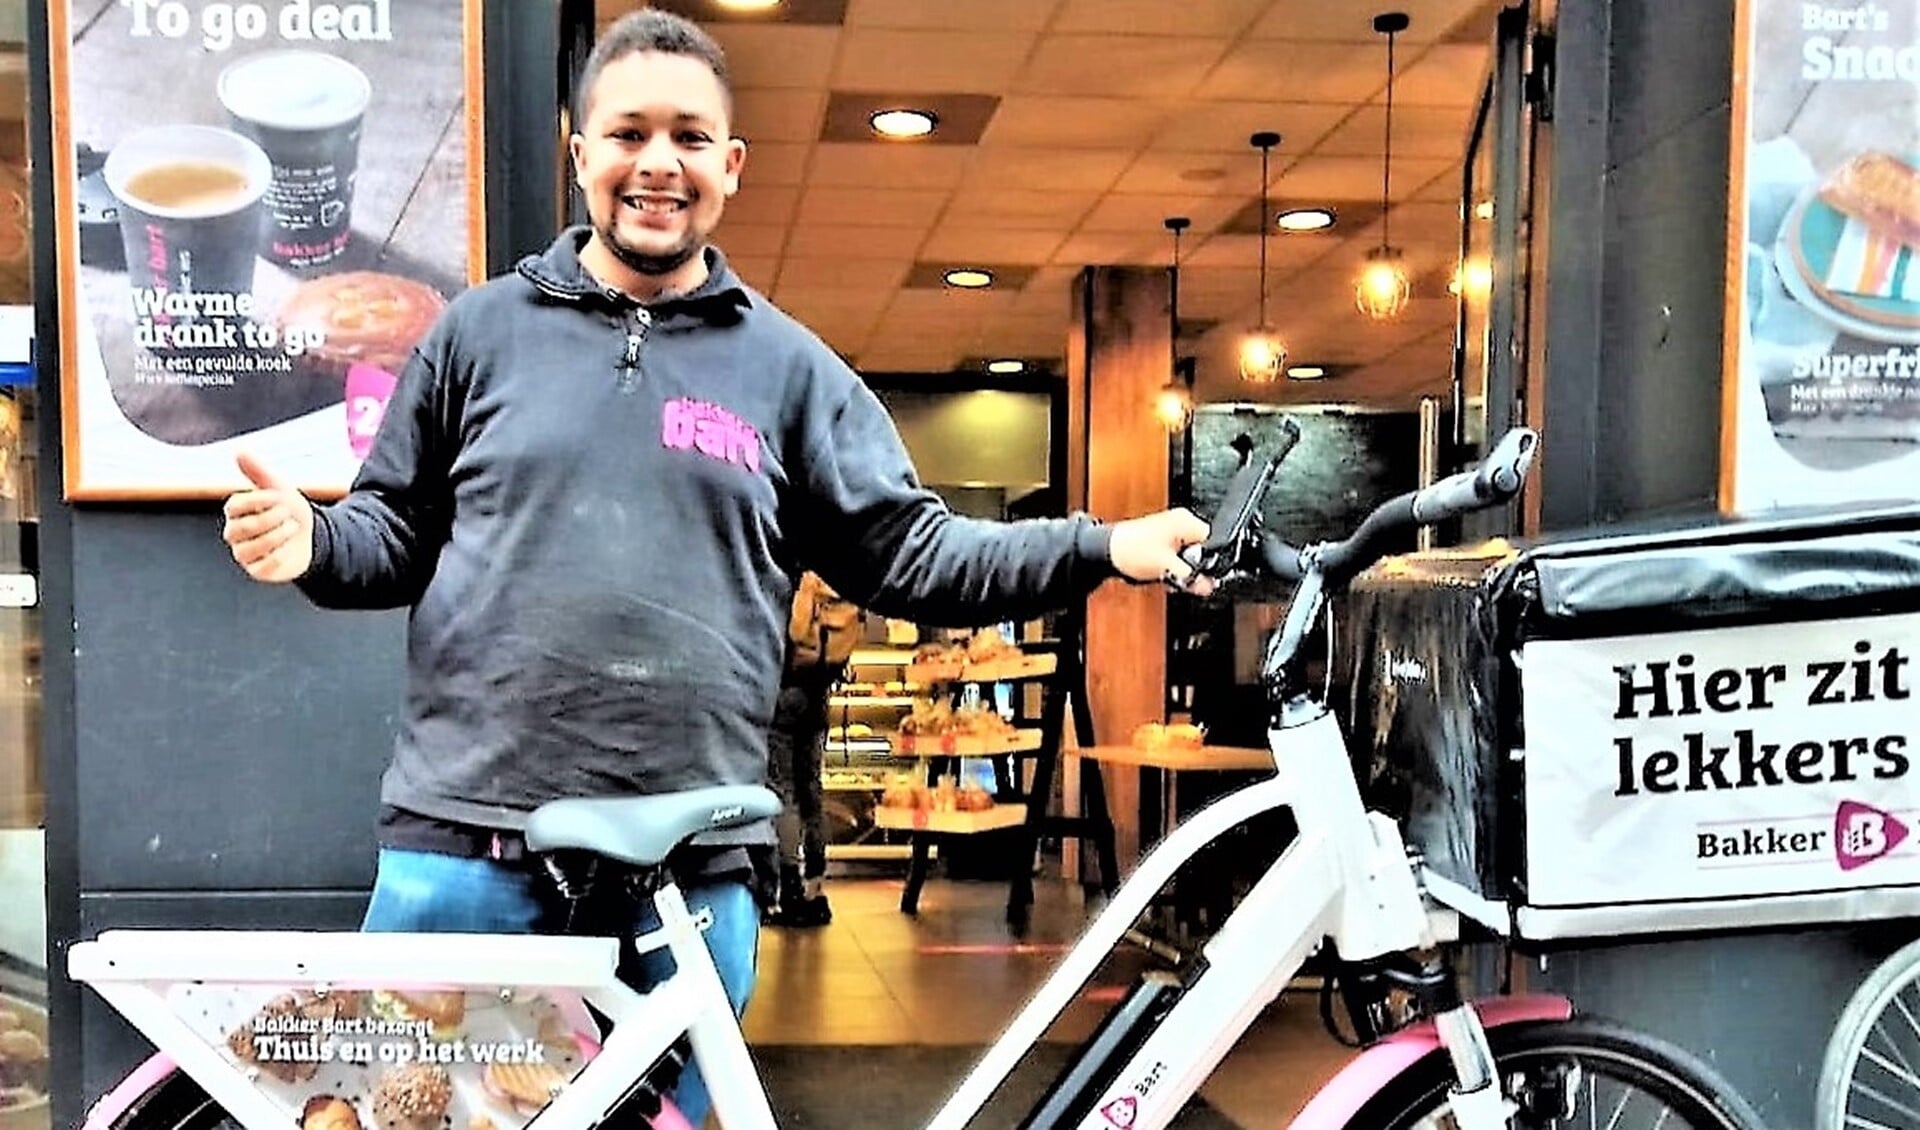 Aanmoedigingsprijs Onbeperkte Topper Sport winnaar Angelo Smit is fietskoerier bij Bakker Bart in Den Haag-Centrum (foto: AW).